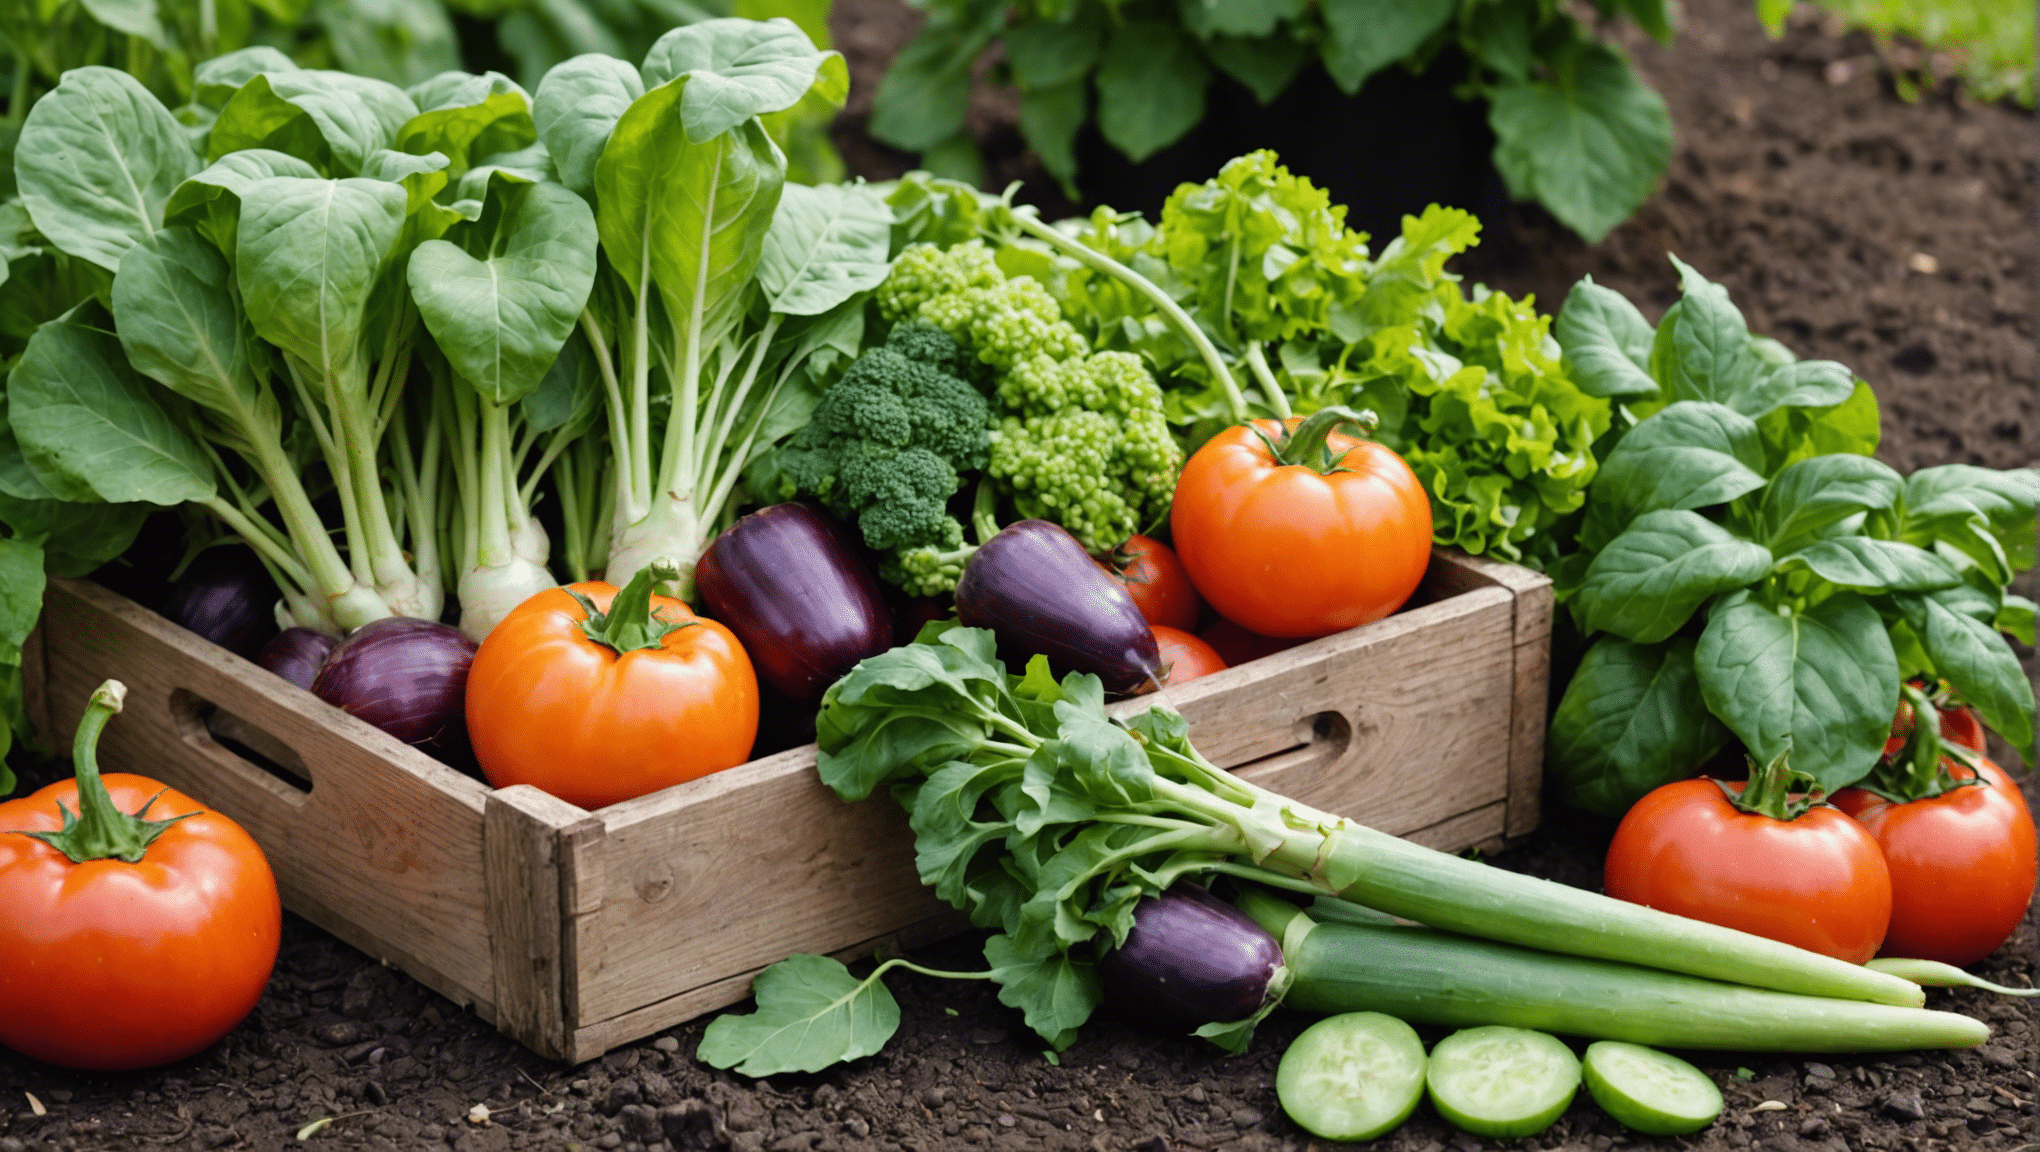 découvrez nos conseils pour planter des légumes dans votre jardin et profiter d'une récolte fraîche et savoureuse. retrouvez nos astuces pour réussir votre potager et cultiver vos propres légumes facilement.